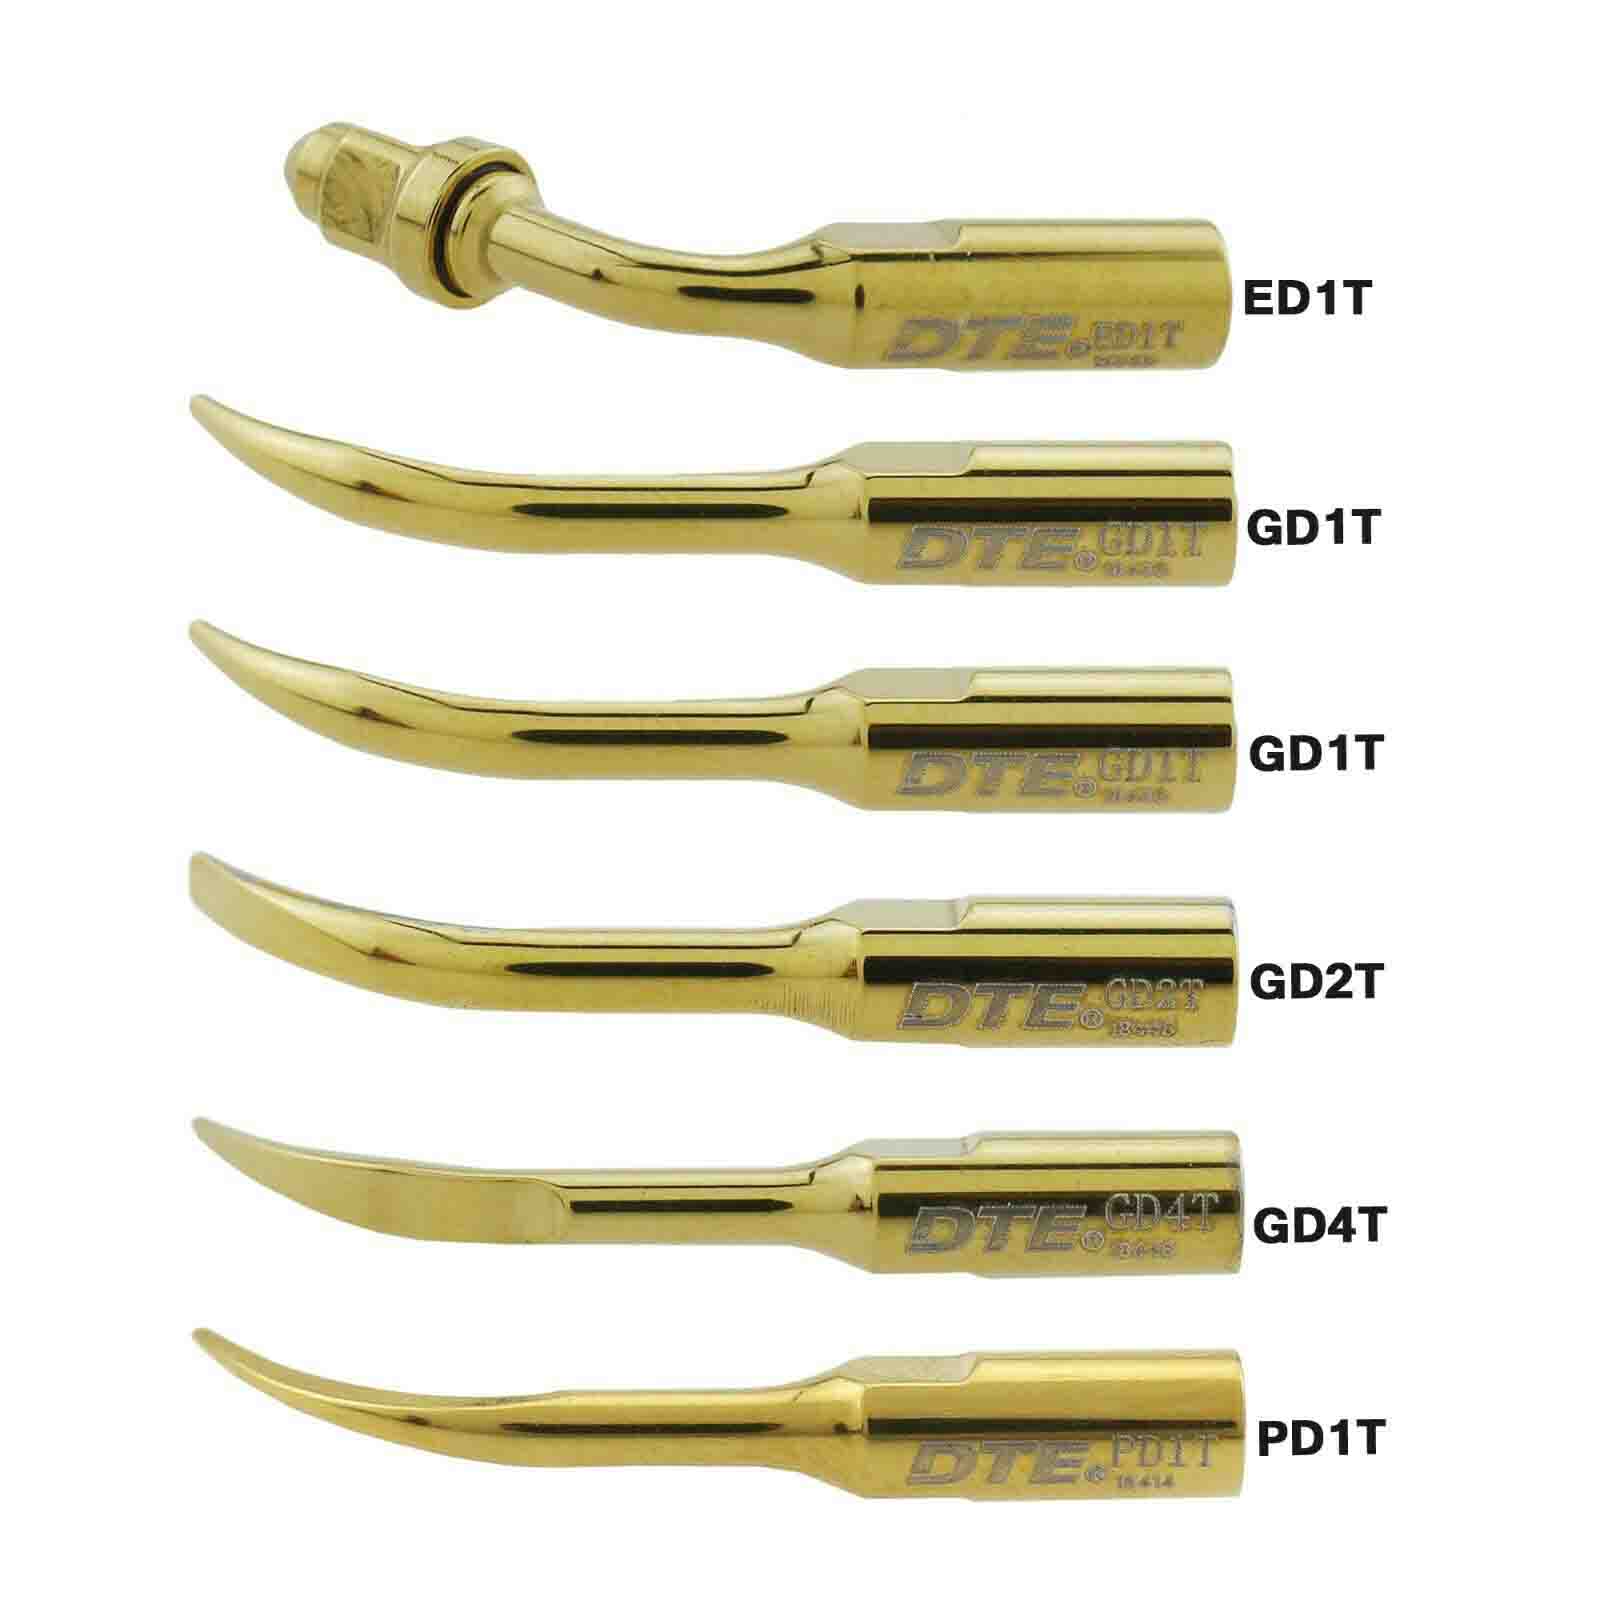 5Pz Woodpecker DTE Inserti piezo /punte per ablatore ultrasuoni GD1T GD2T PD1T ED1T compatibile Satelec / NSK